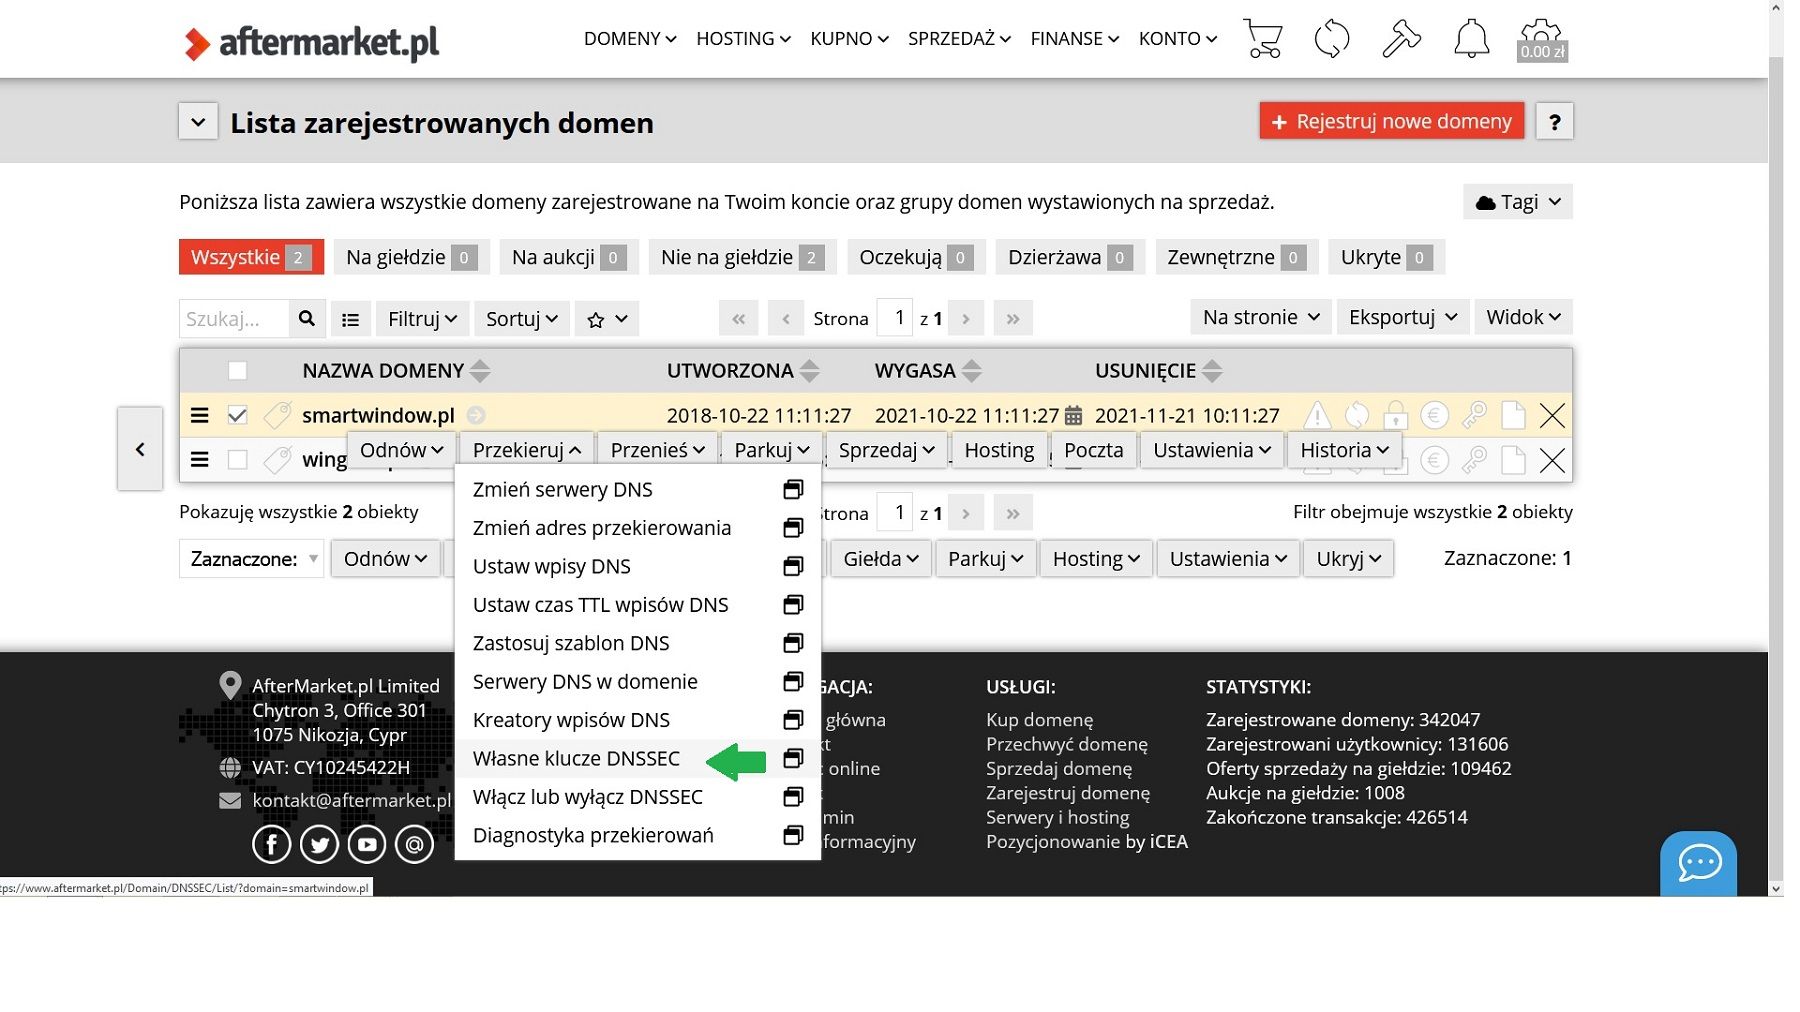 Zabezpiecz swoją domenę przez DNSSEC! W Aftermarket.pl to domyślne rozwiązanie